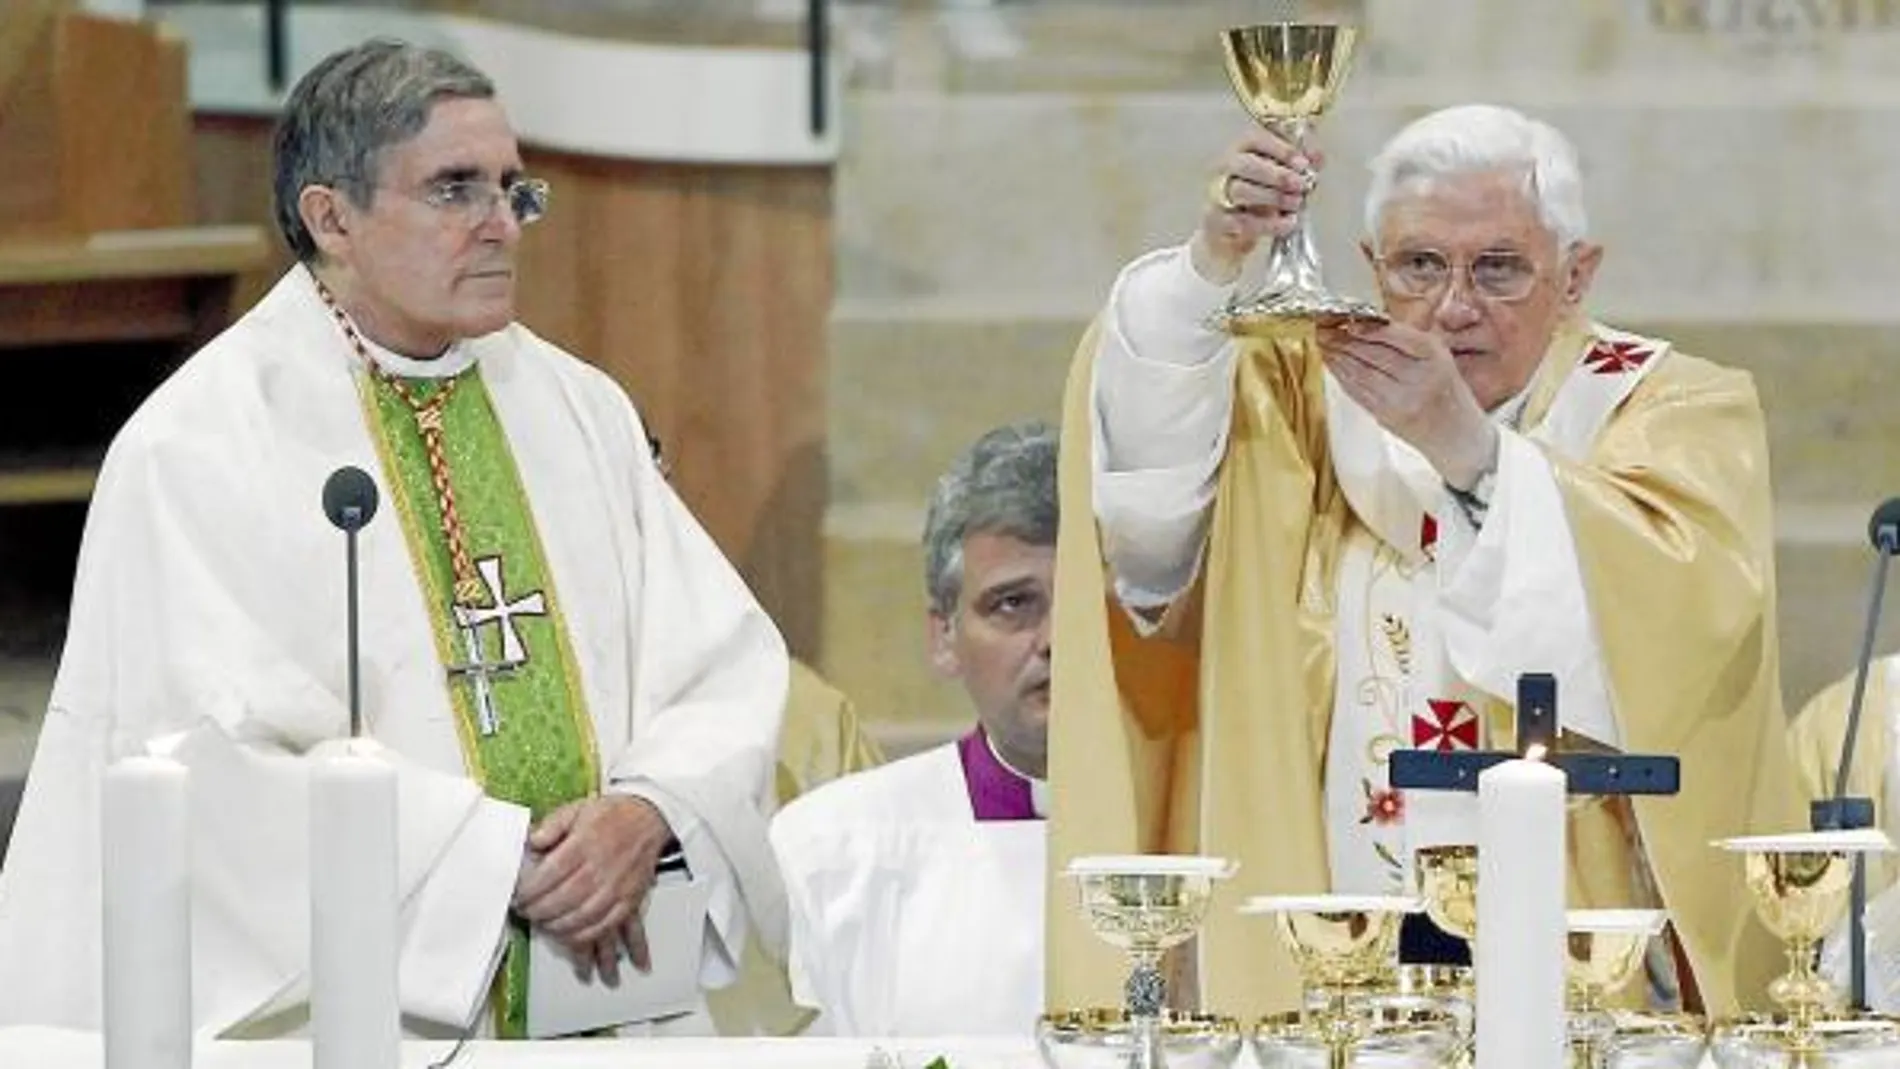 El Papa habló en catalán en muchos momentos durante la homilía